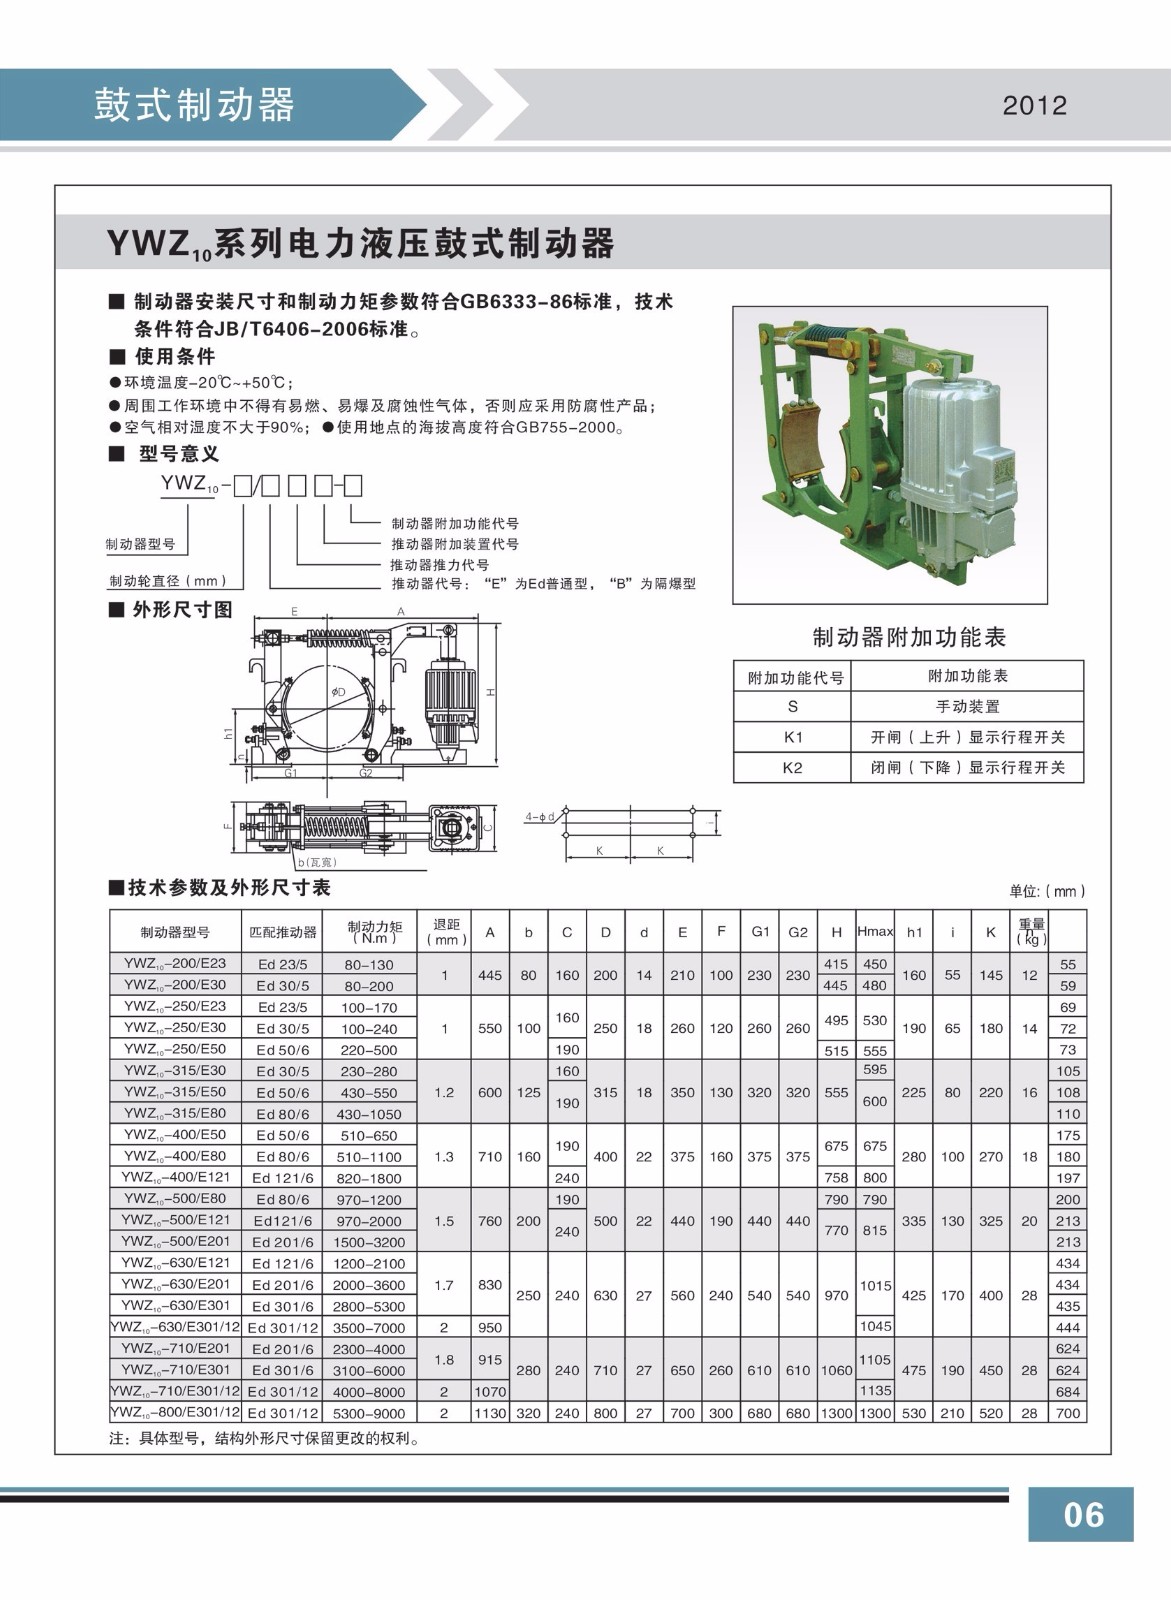 YWZ10系列電力液壓鼓式制動器